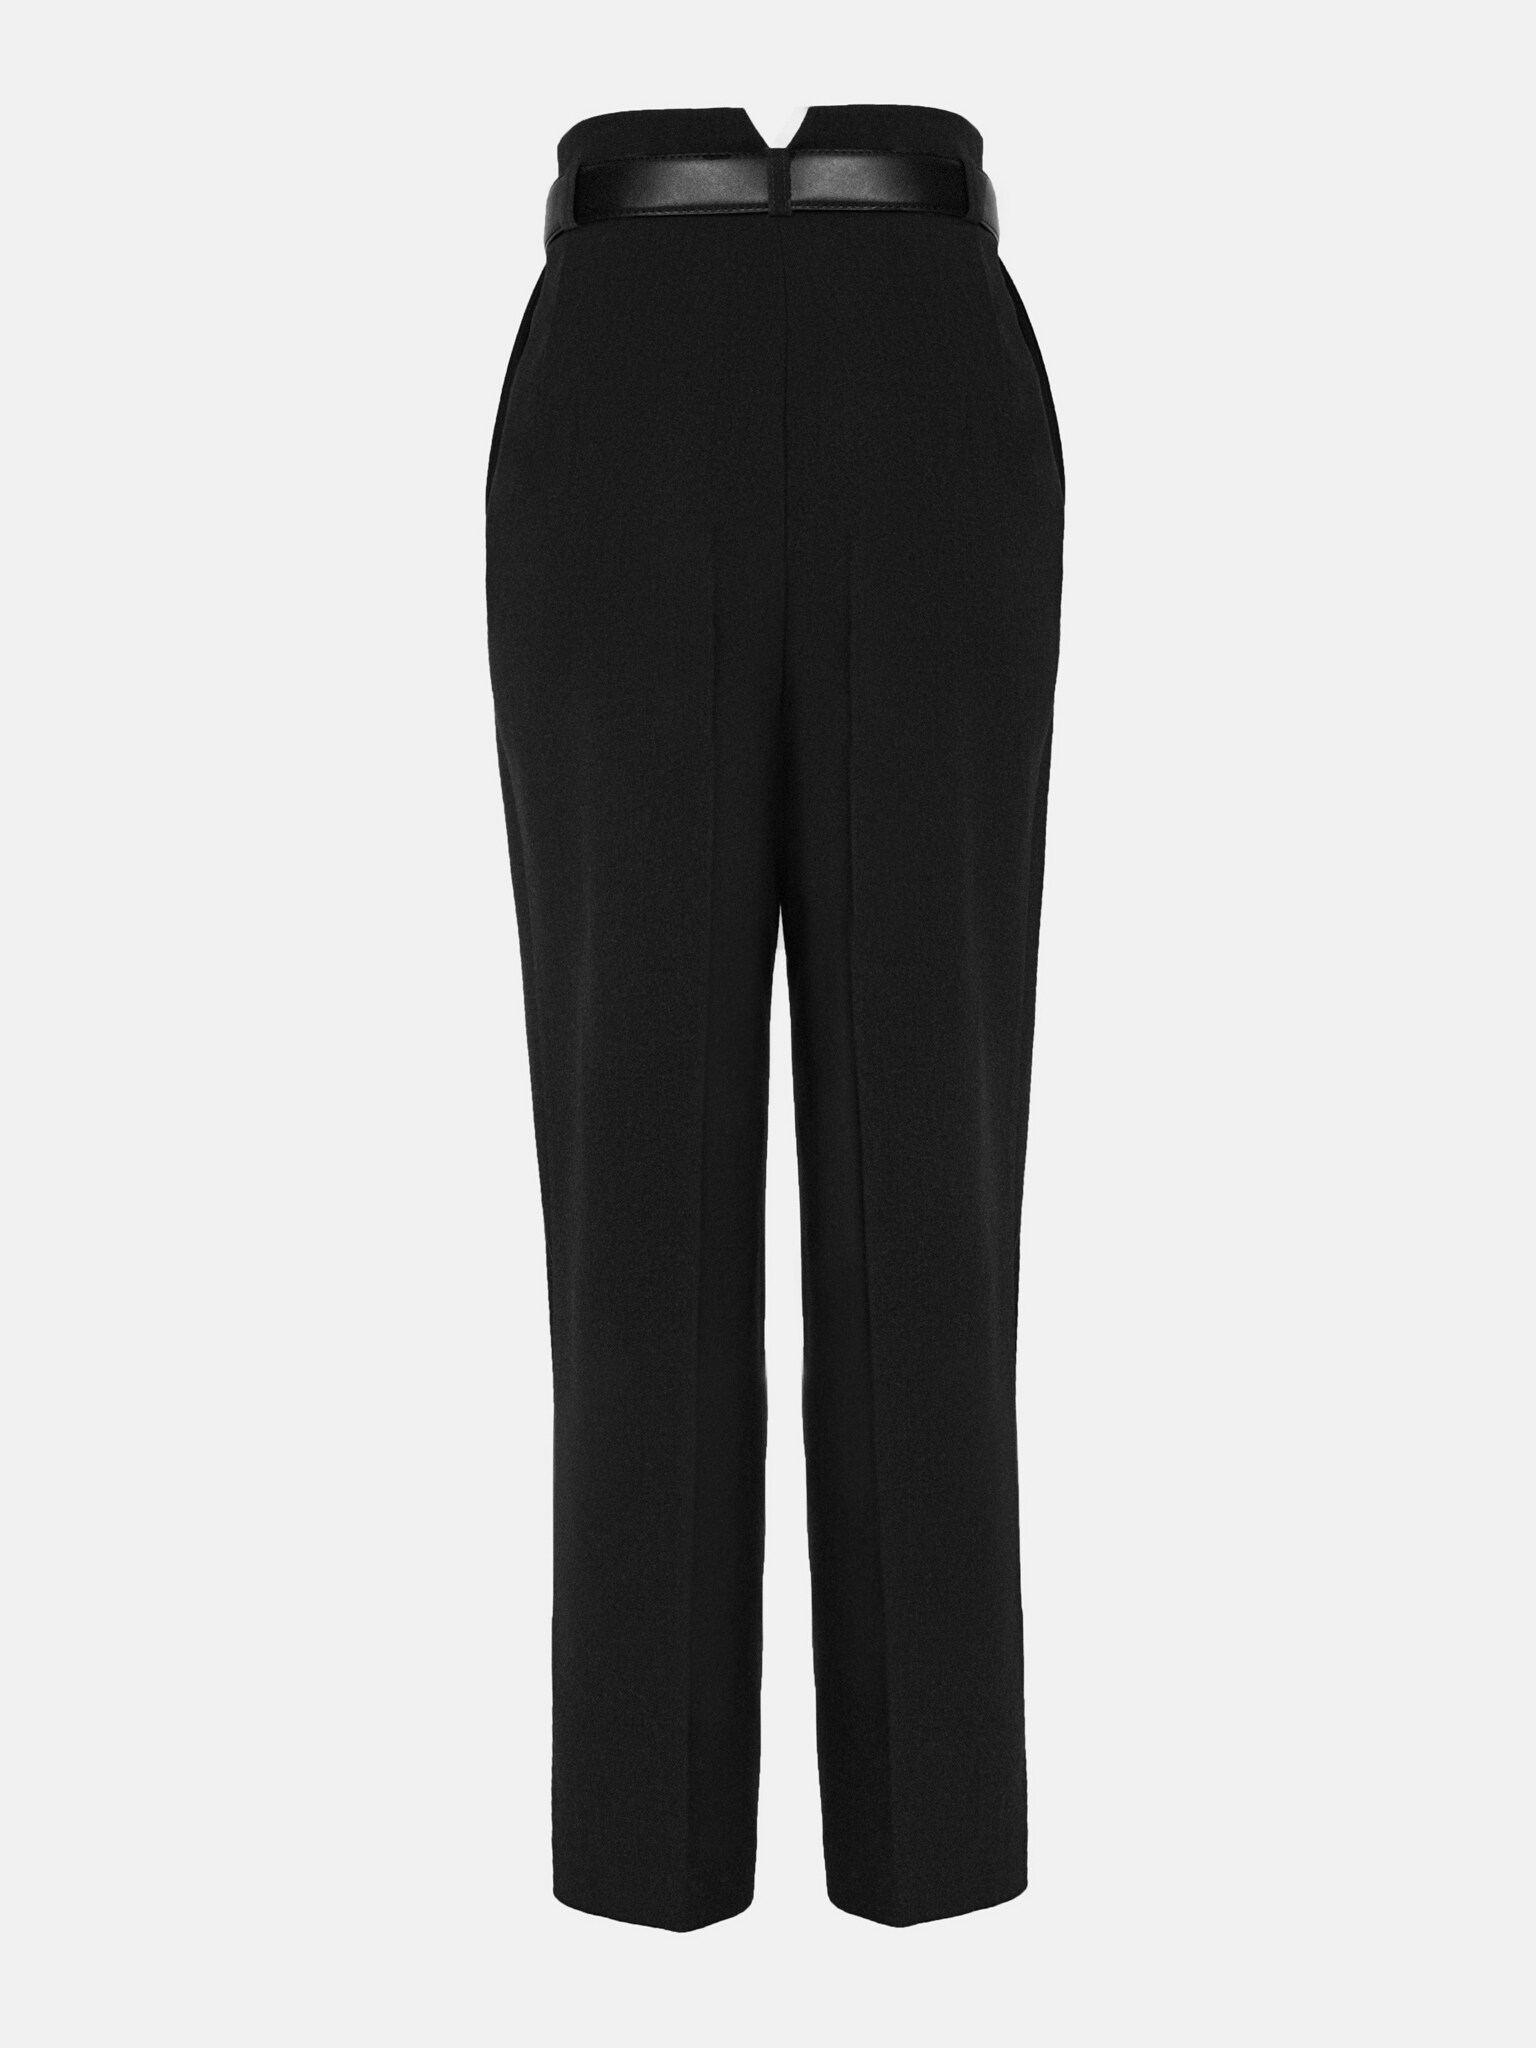 Belted straight-leg wool pants :: LICHI - Online fashion store